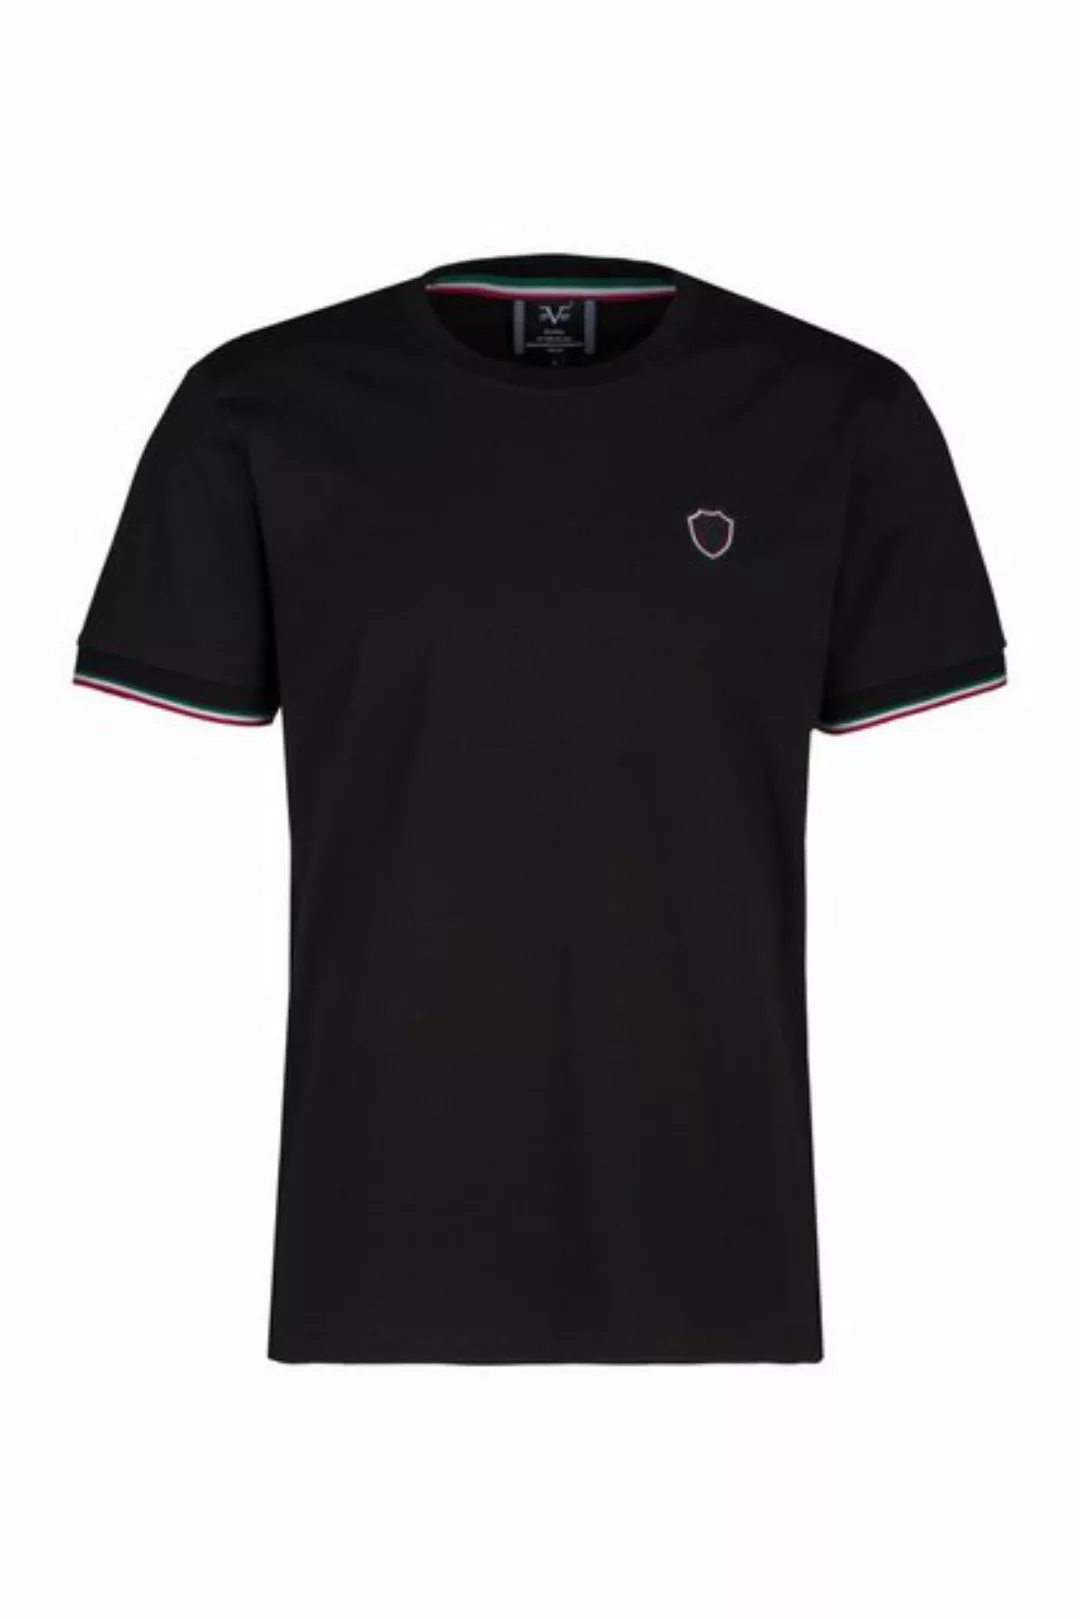 19V69 Italia by Versace T-Shirt TURE sportliches Casual Herren Kurzarm-Shir günstig online kaufen